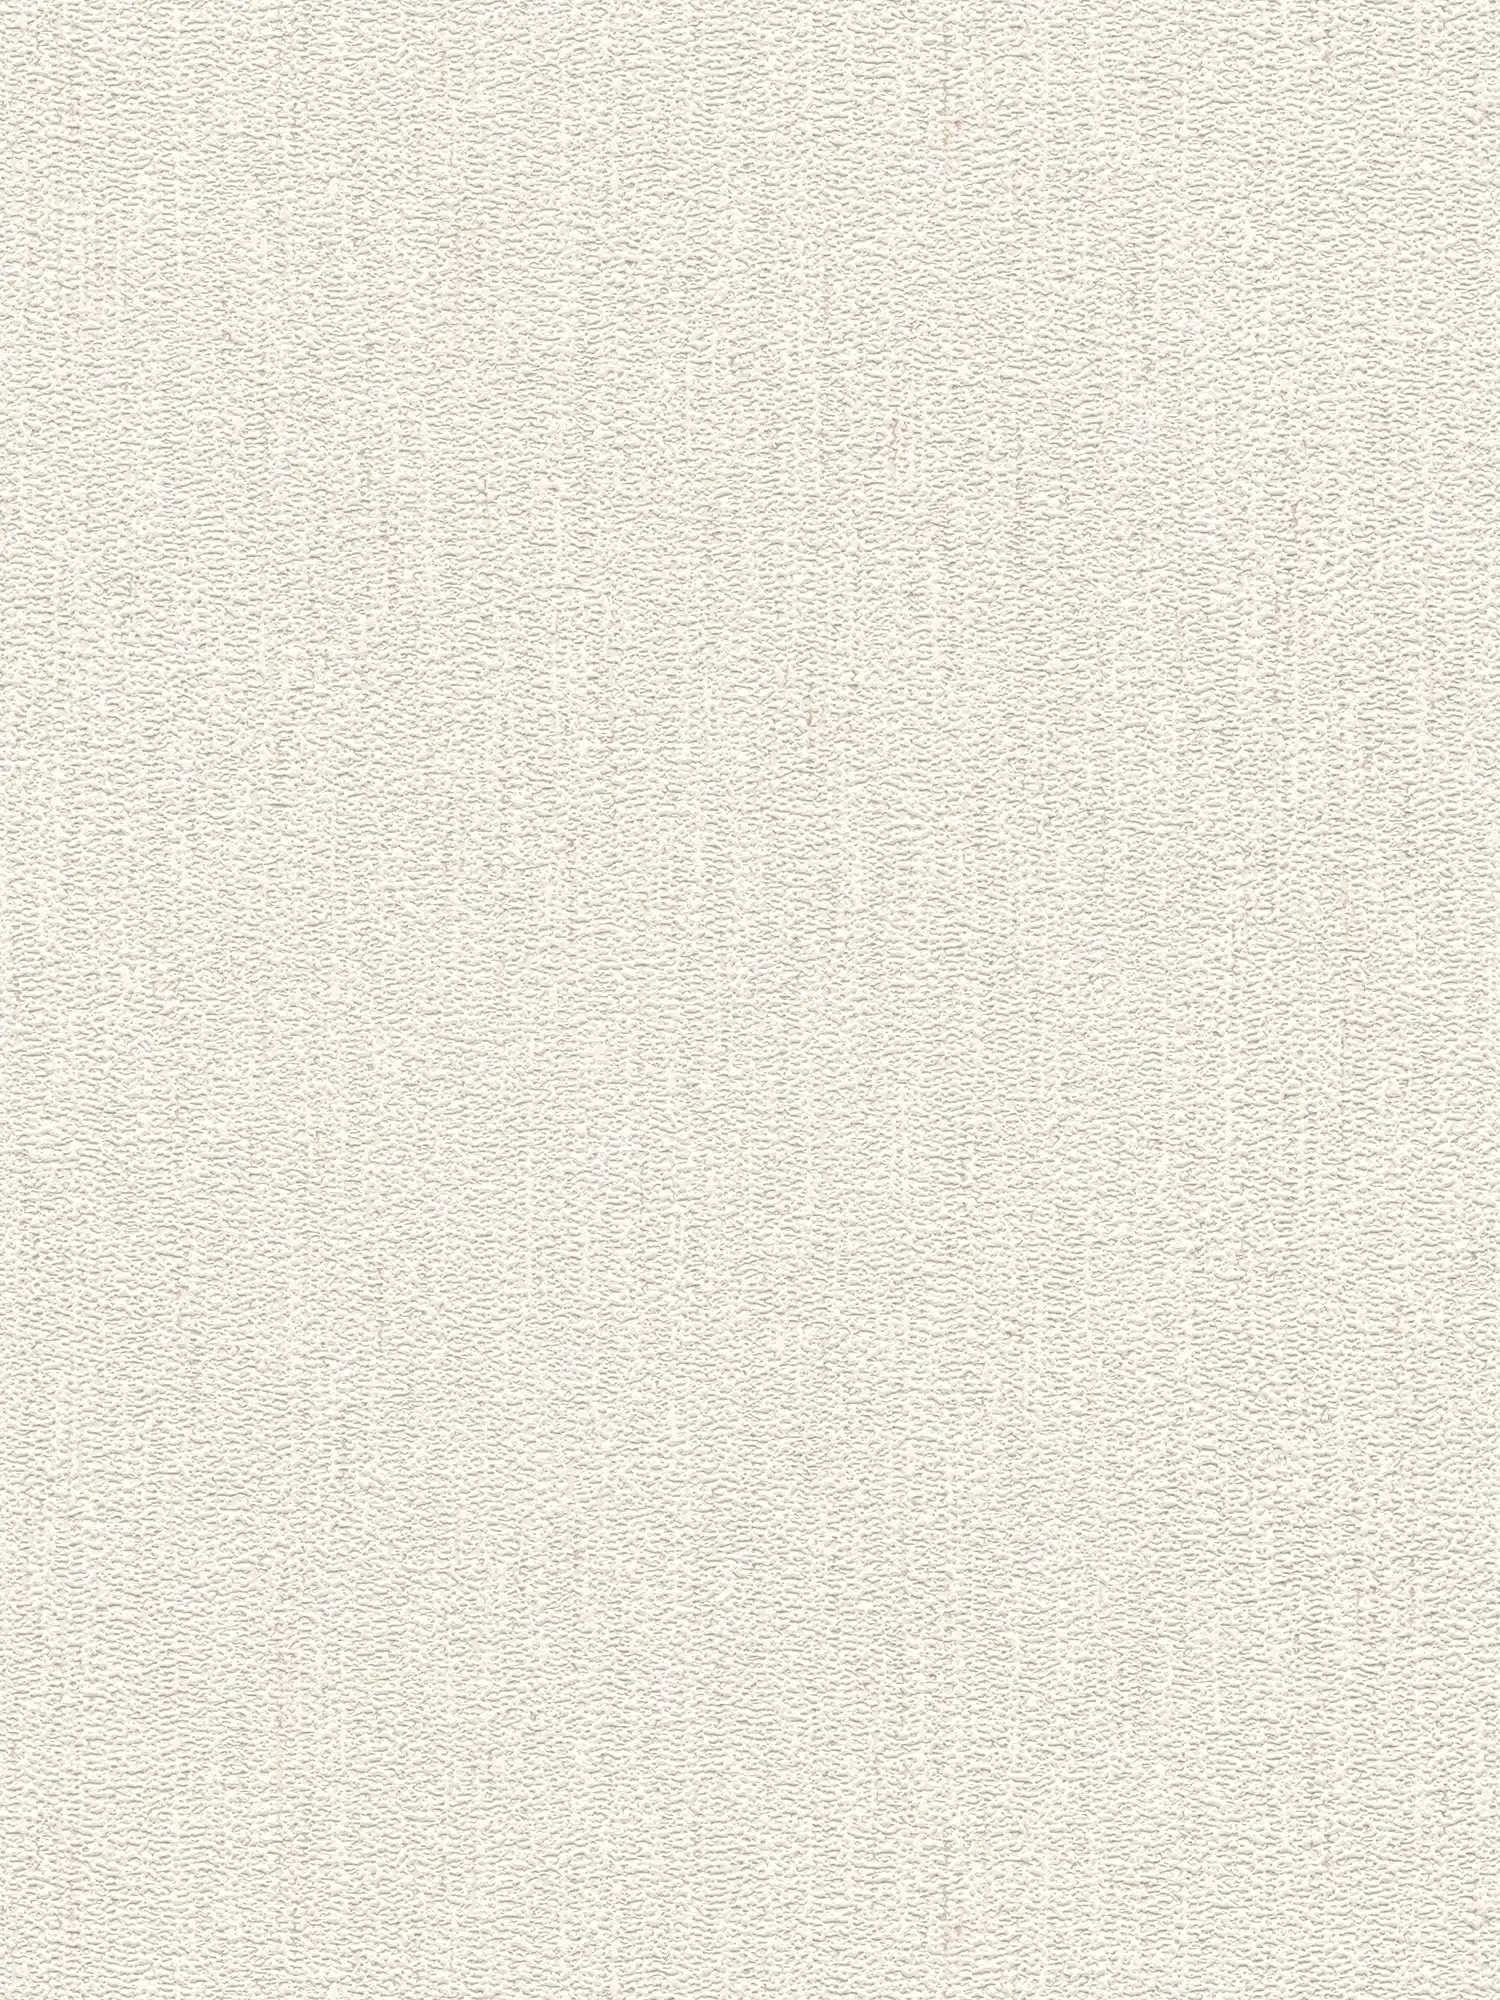 Vliestapete mit Gewebe Struktur in leicht glänzend – Weiß, Creme
